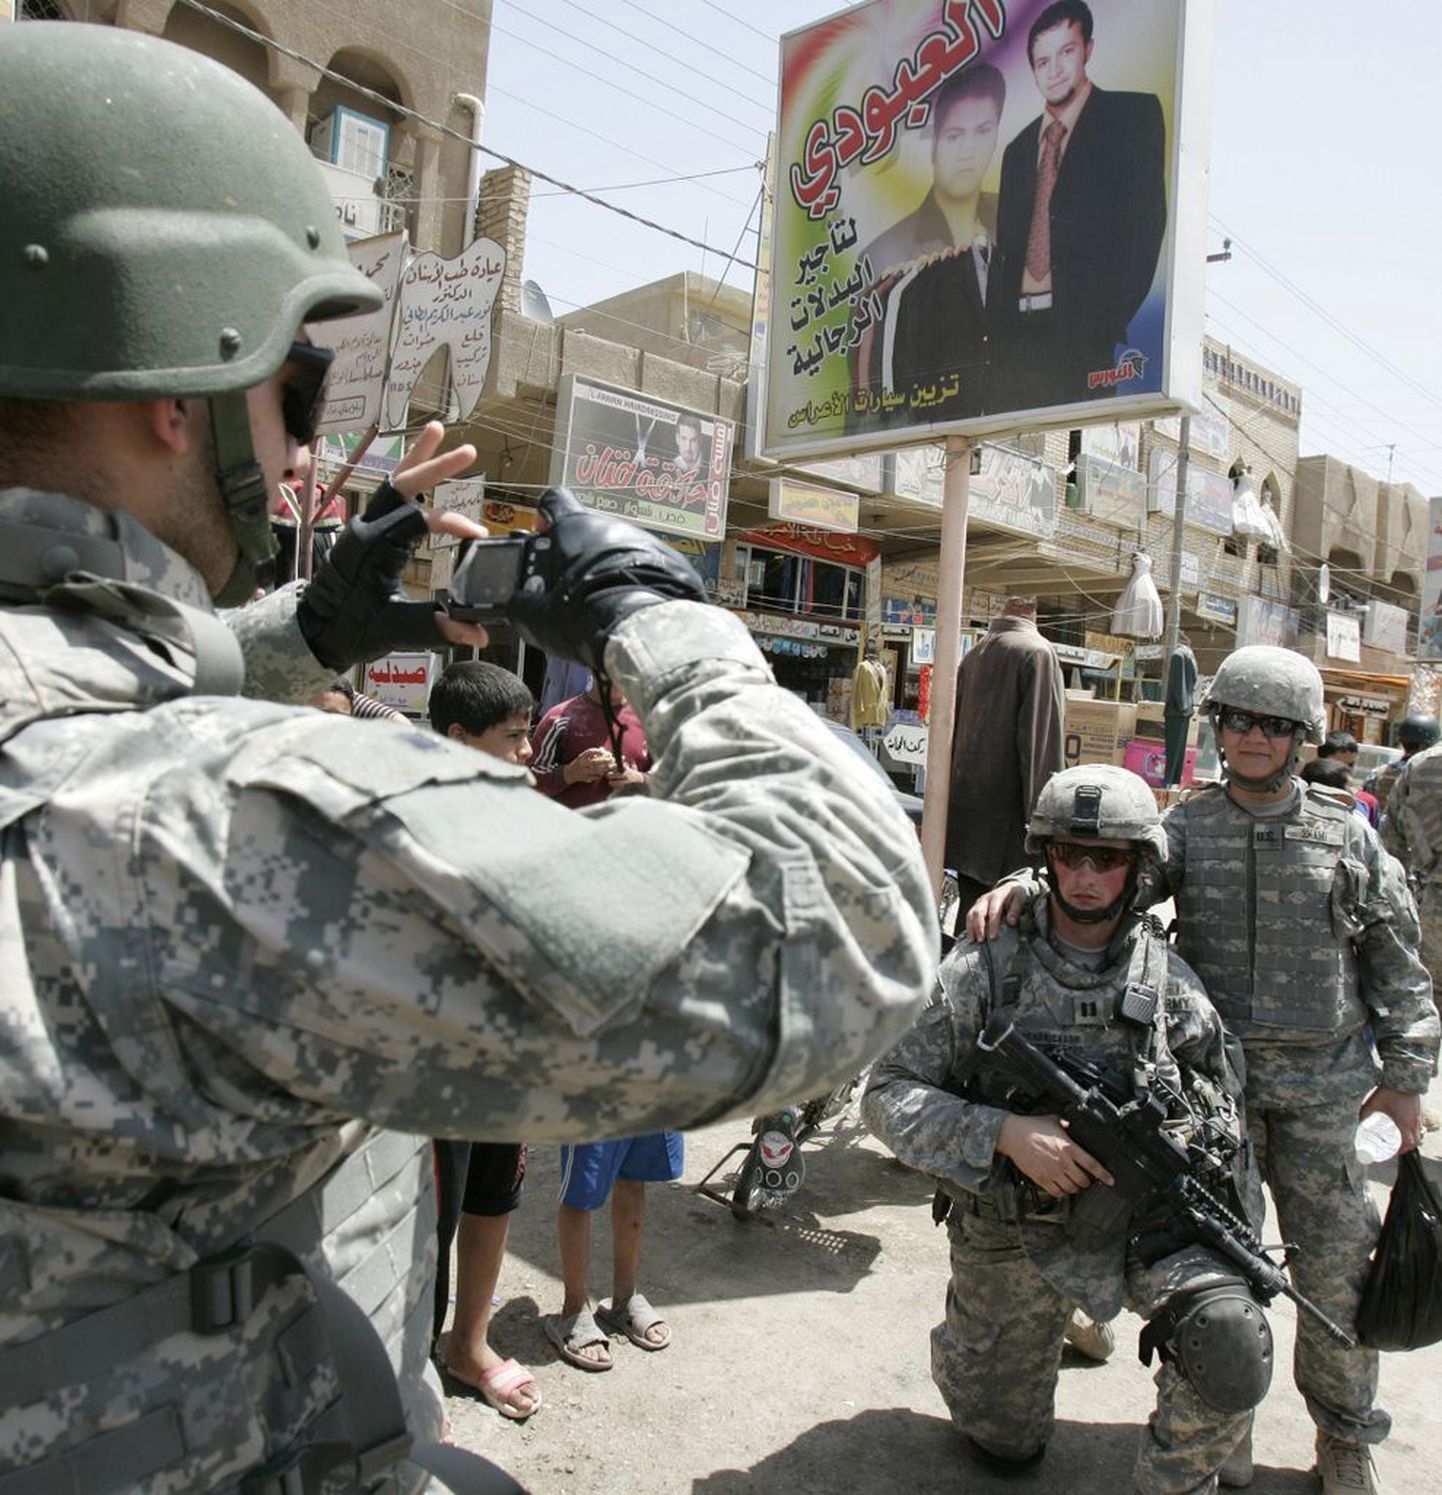 Araabia keele tõlk Iraagis teenivatest USA sõduritest pilti tegemas.